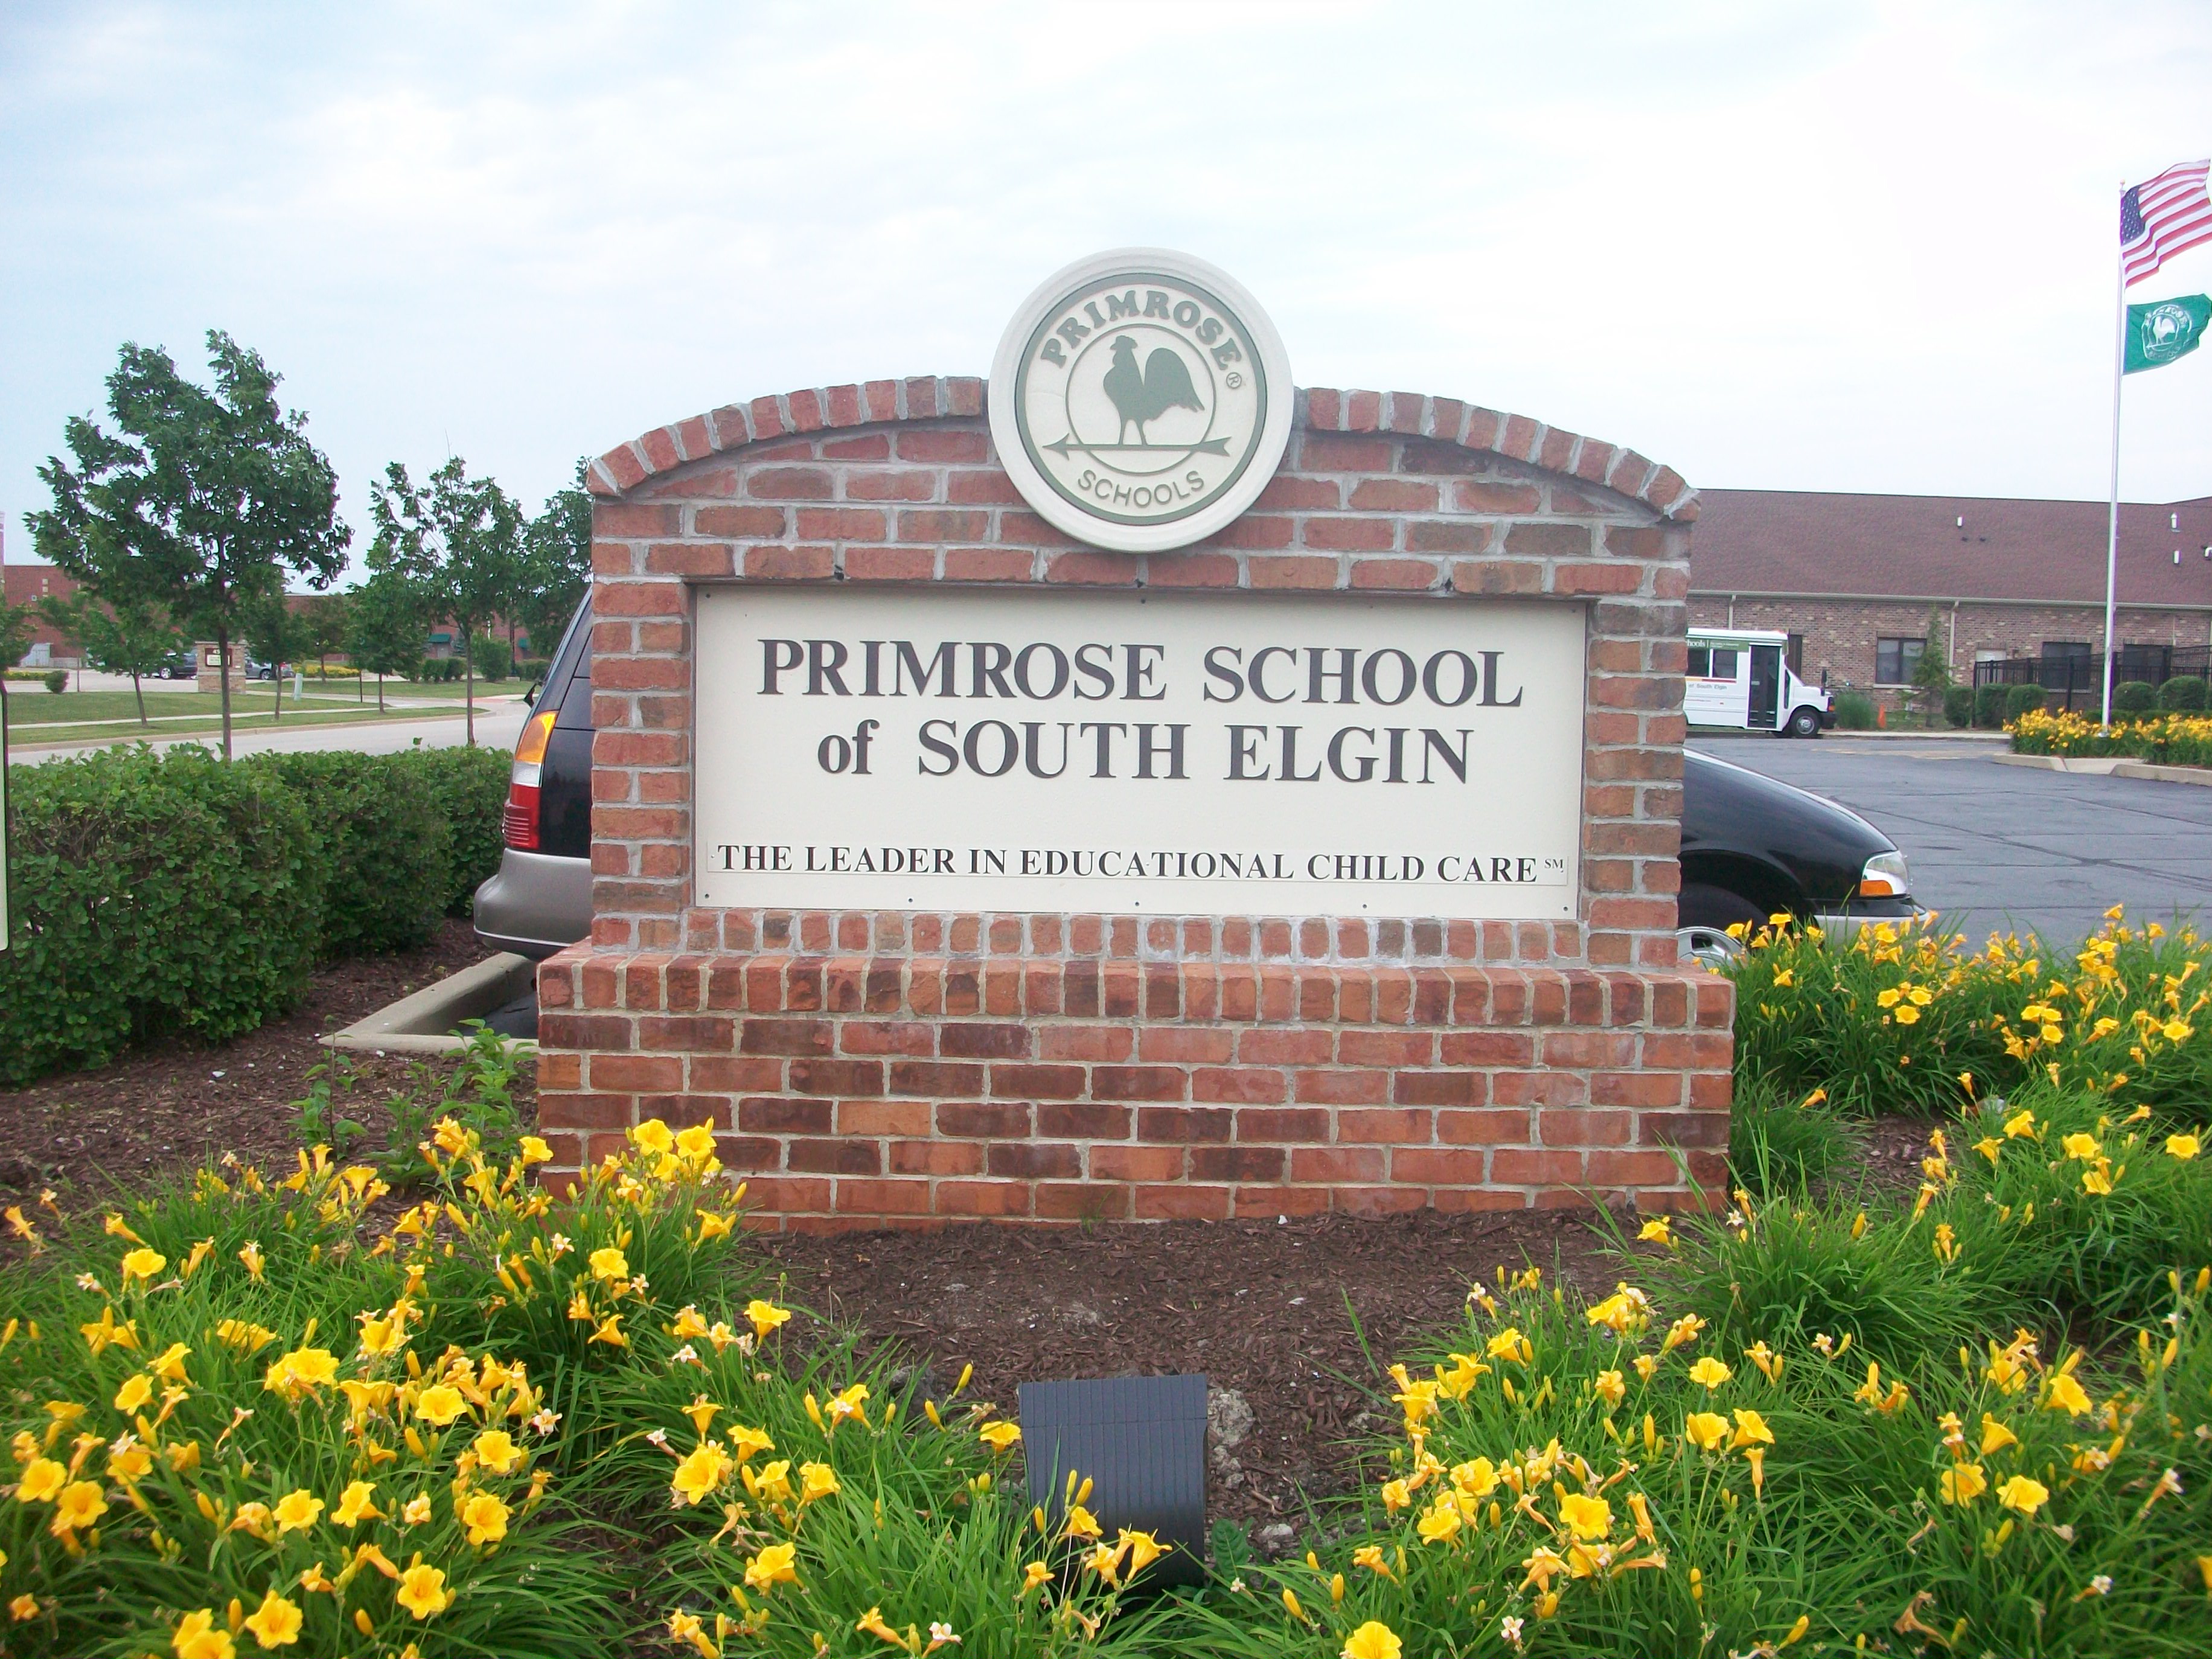 Primrose School of South Elgin South Elgin (847)468-1630